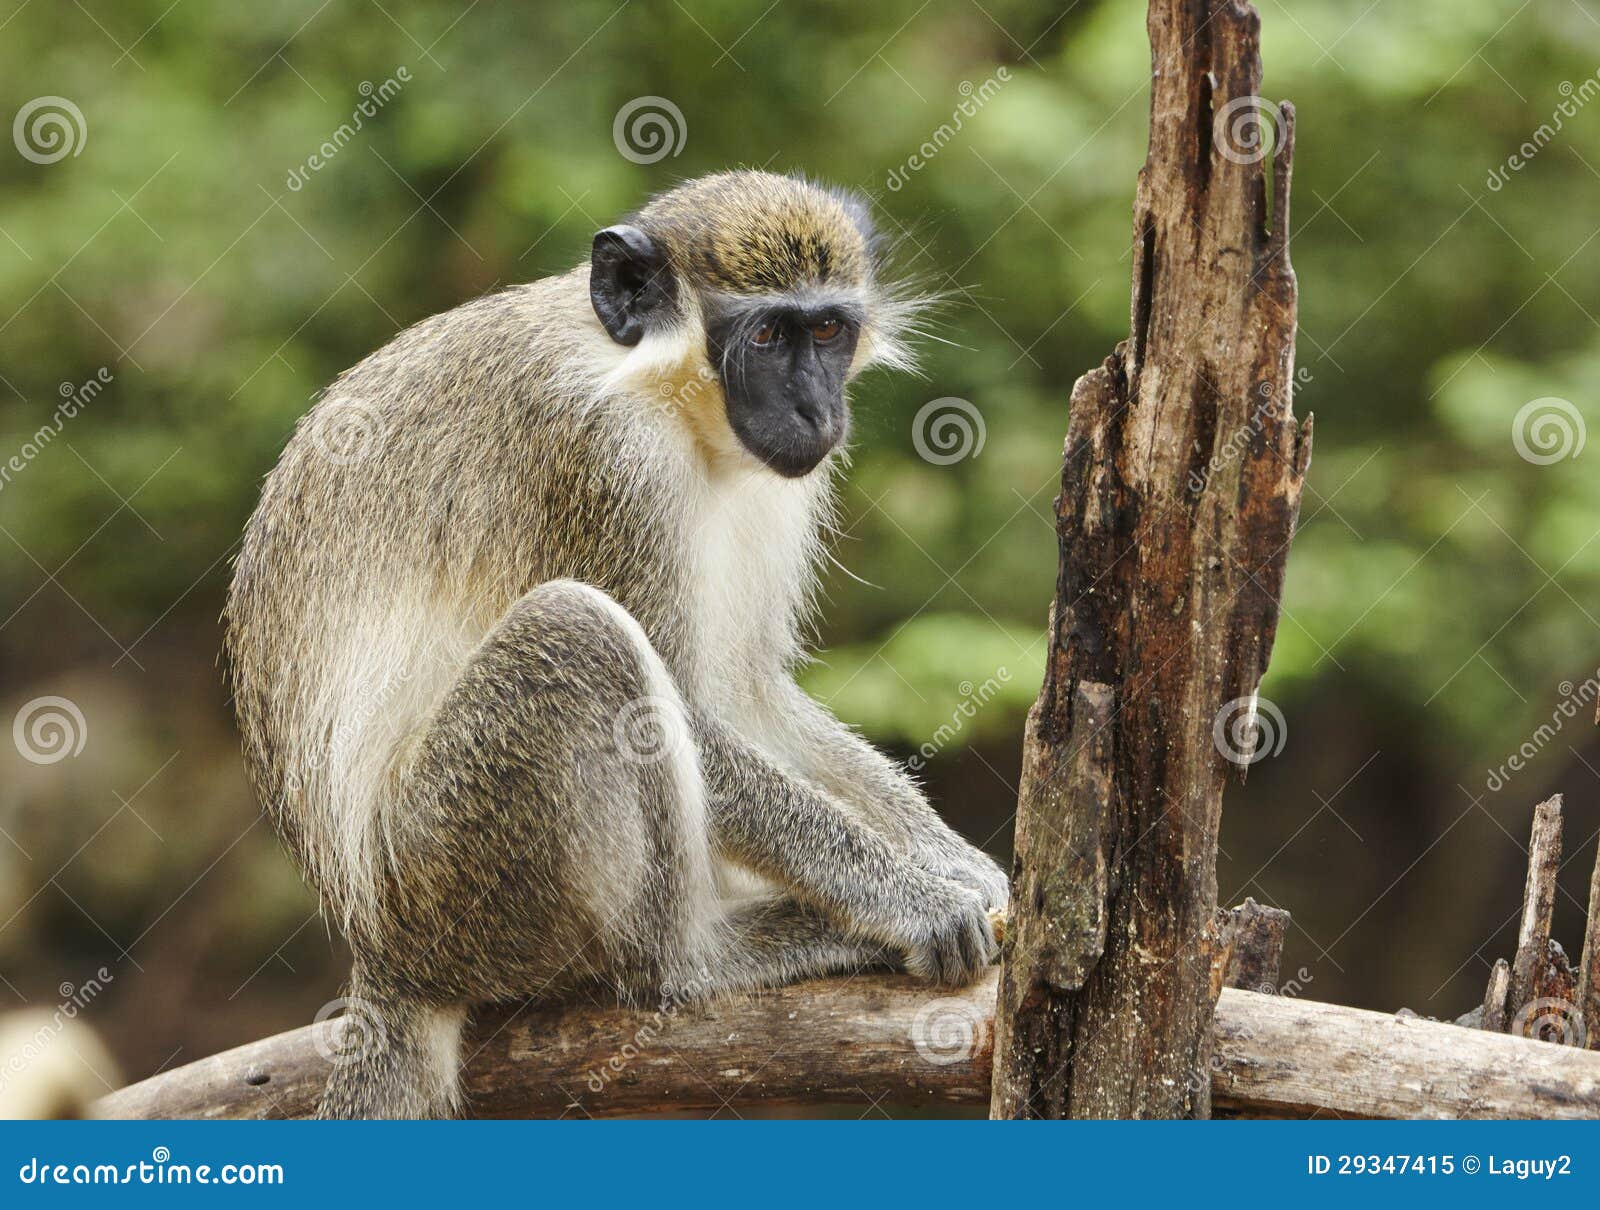 Mono verde. Los monitos hallado en Barbados procedían